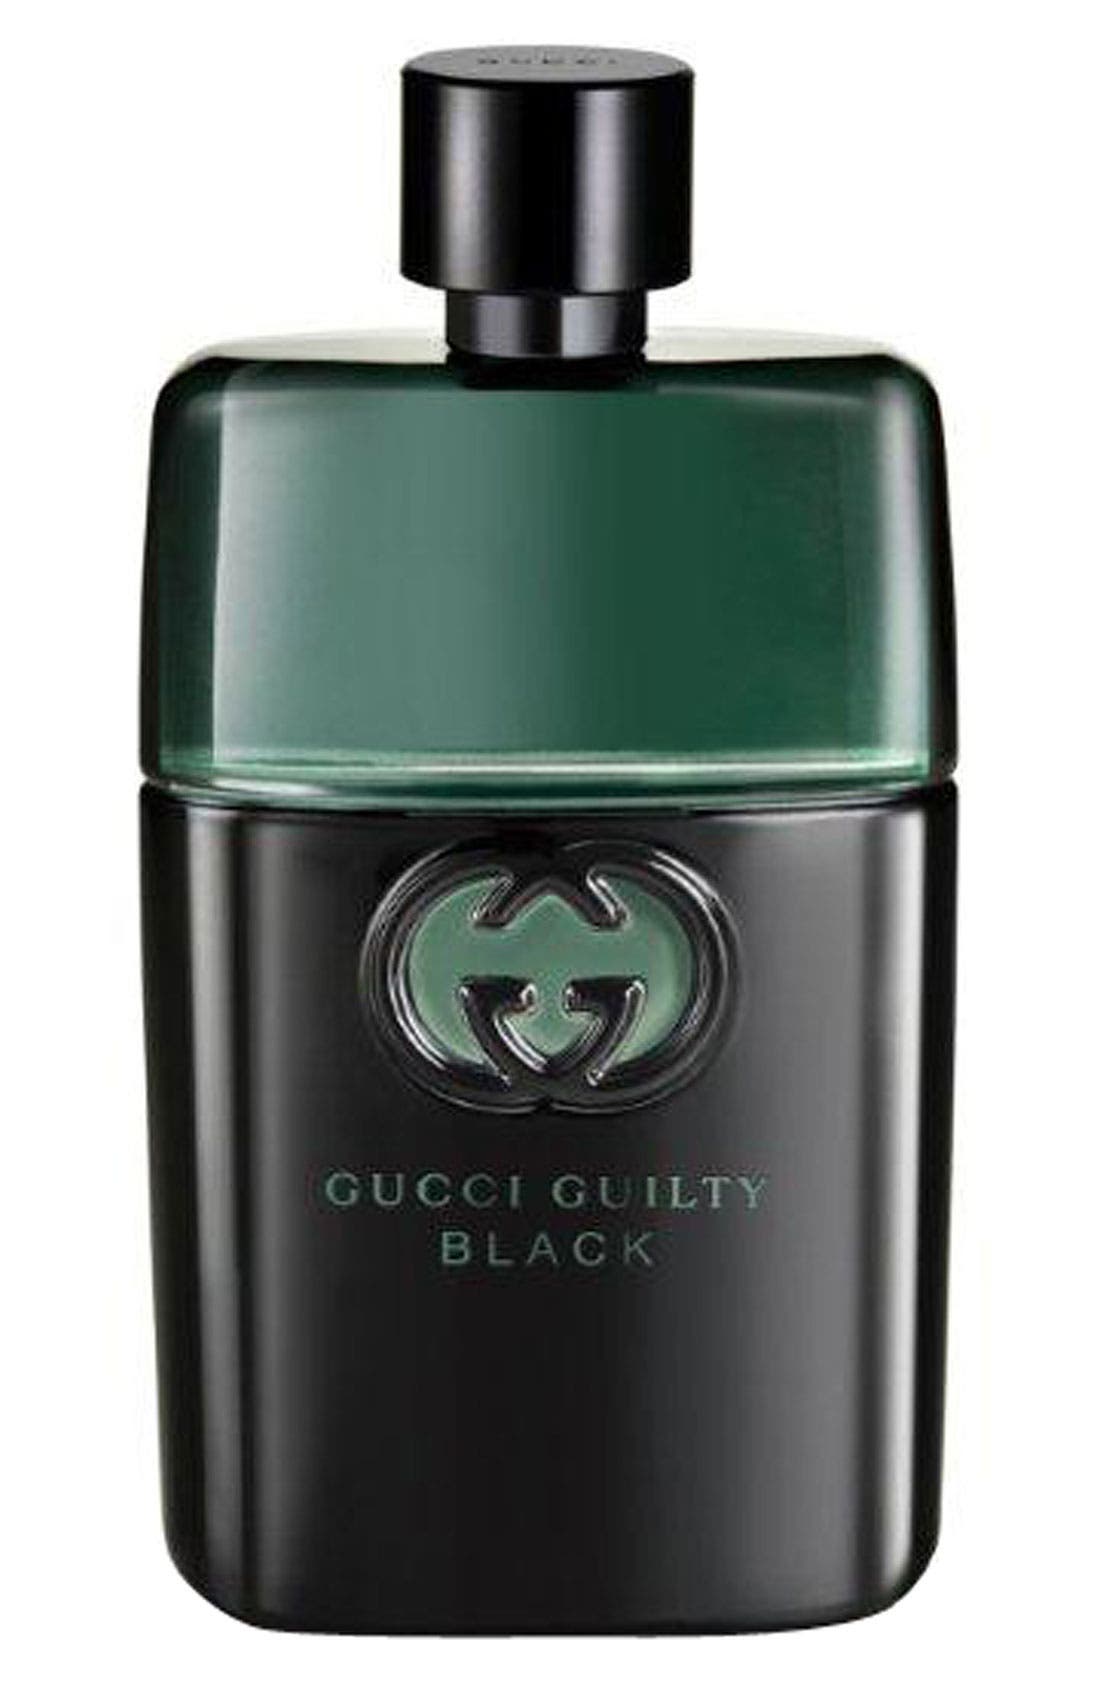 Gucci Guilty Black pour Homme Eau de Toilette at Nordstrom, Size 3 Oz